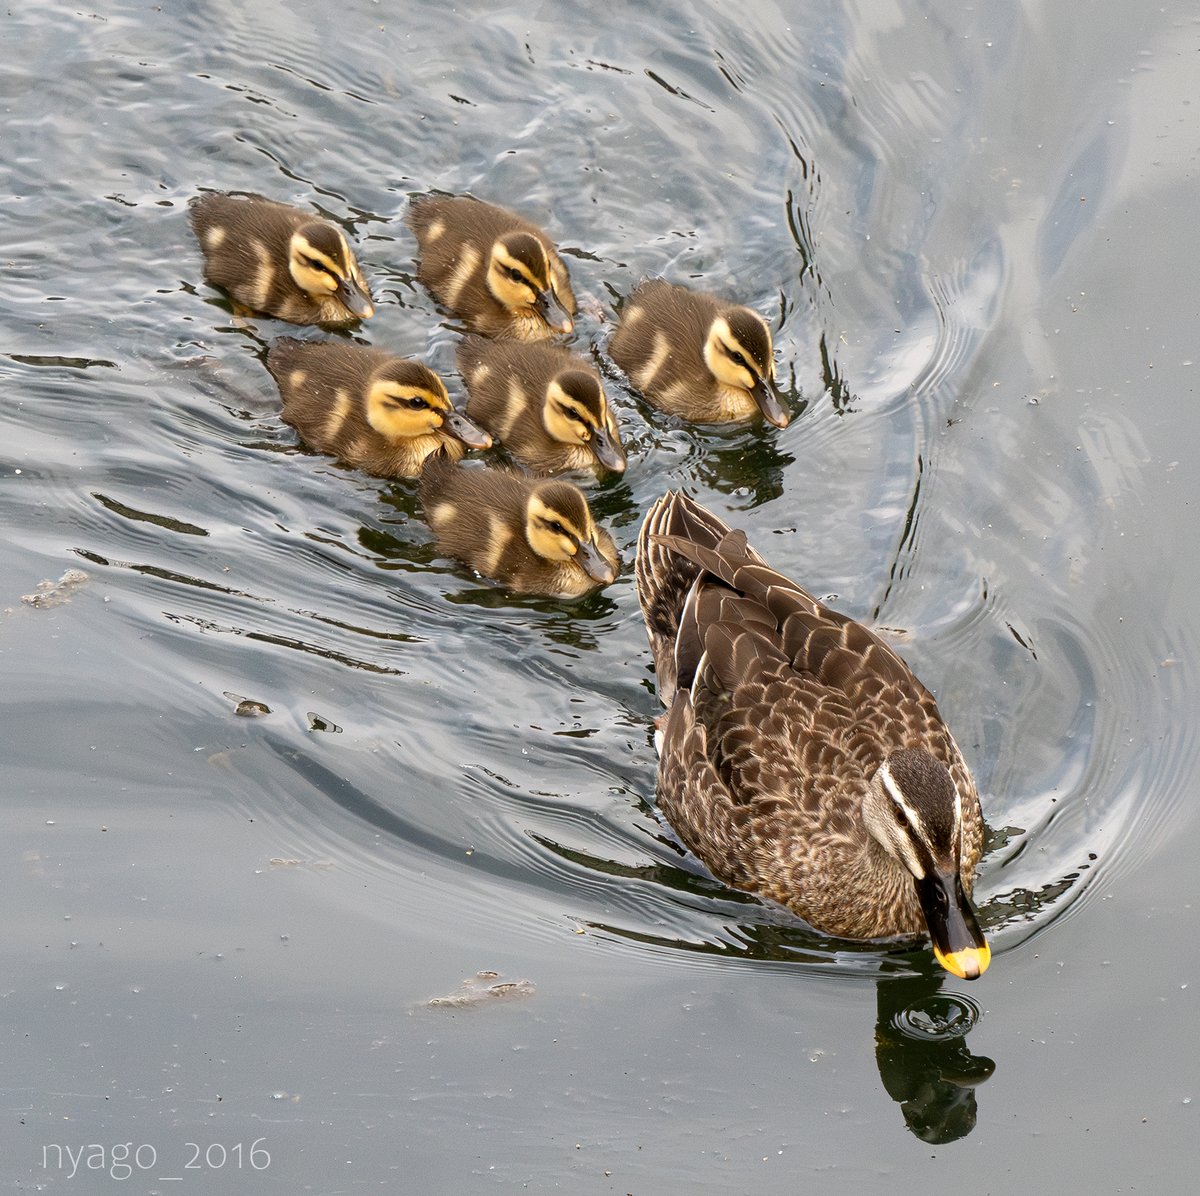 さっき近所の川にいた #カルガモ さん #家族 ♪
#SpotBilledDuck #チビガモ #子ガモ #ファミリー #カモ #鴨 #duck #鳥 #野鳥 #bird #wildbird